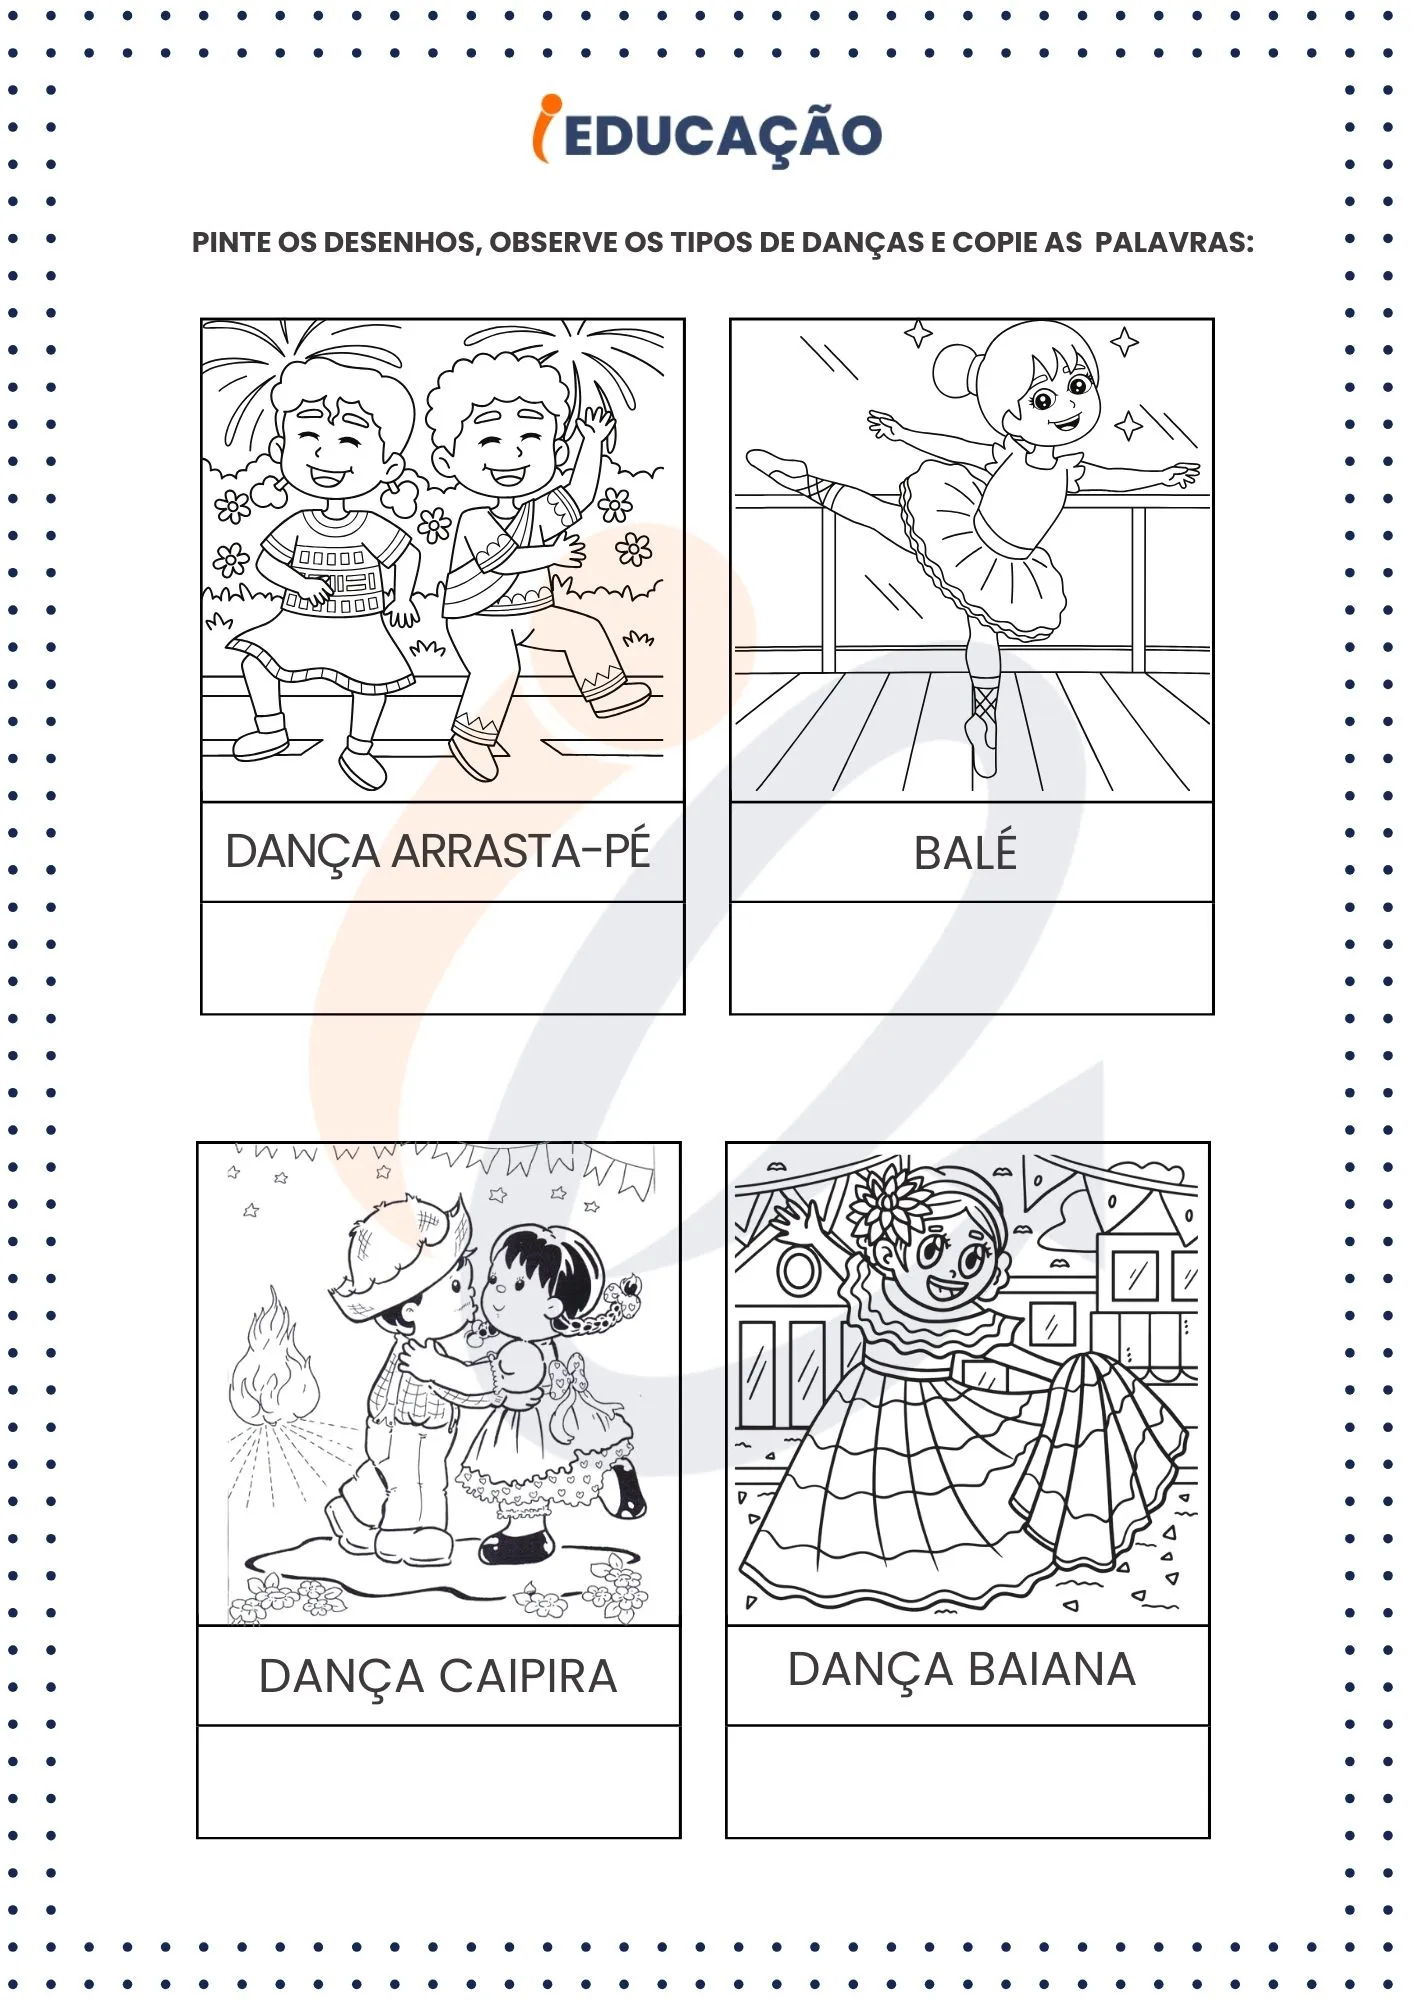 Atividade de escrita com desenhos para colorir na pré-escola - Corpo, Gestos e Movimento - Anexo do planejamento iEducação.jpg